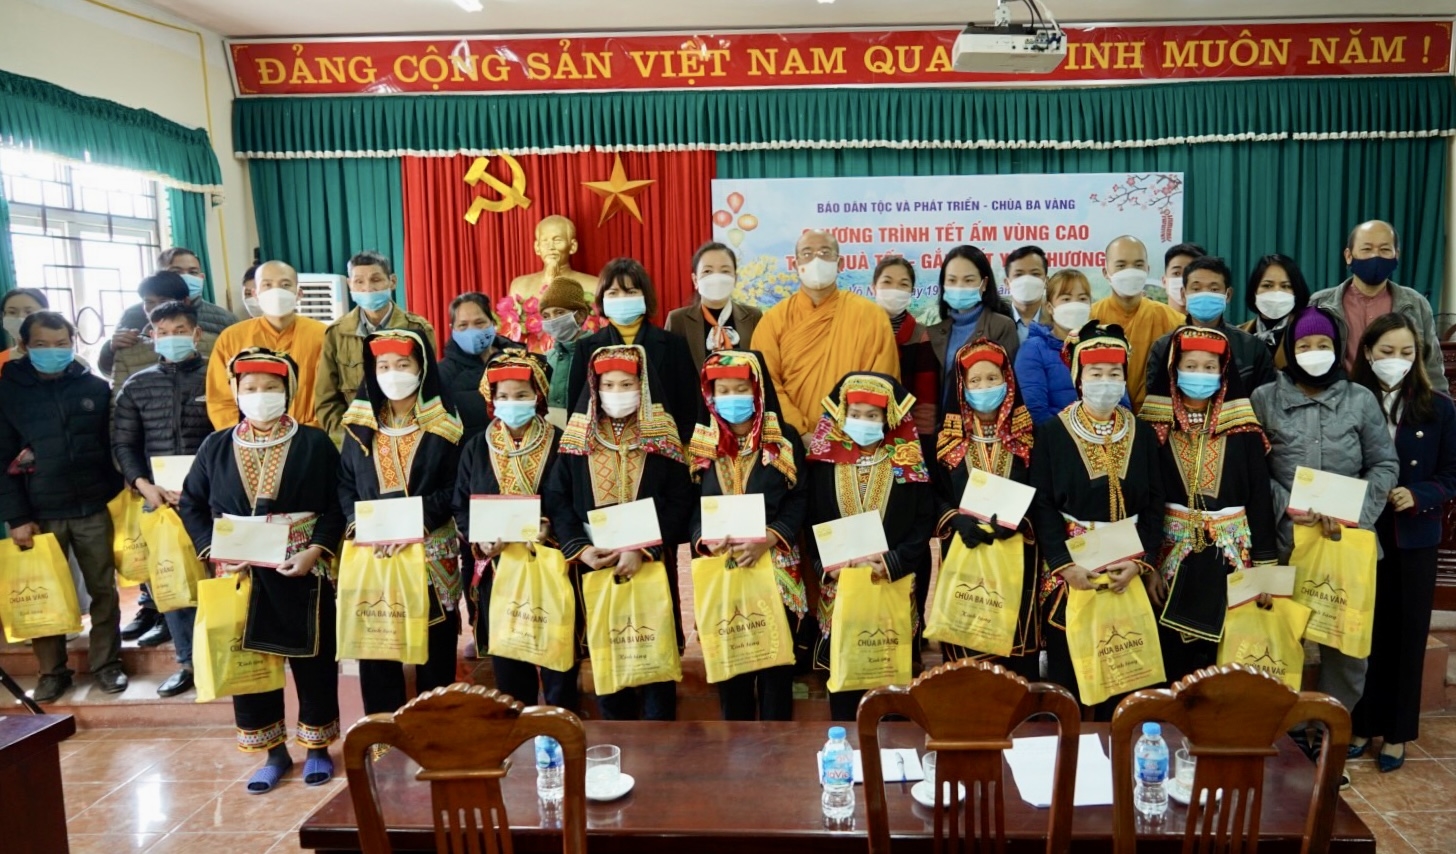 Báo Dân tộc và Phát triển phối hợp với Chùa Ba Vàng tổ chức Chương trình "Trao quà Tết gắn kết yêu thương" tại tỉnh Thái Nguyên 3